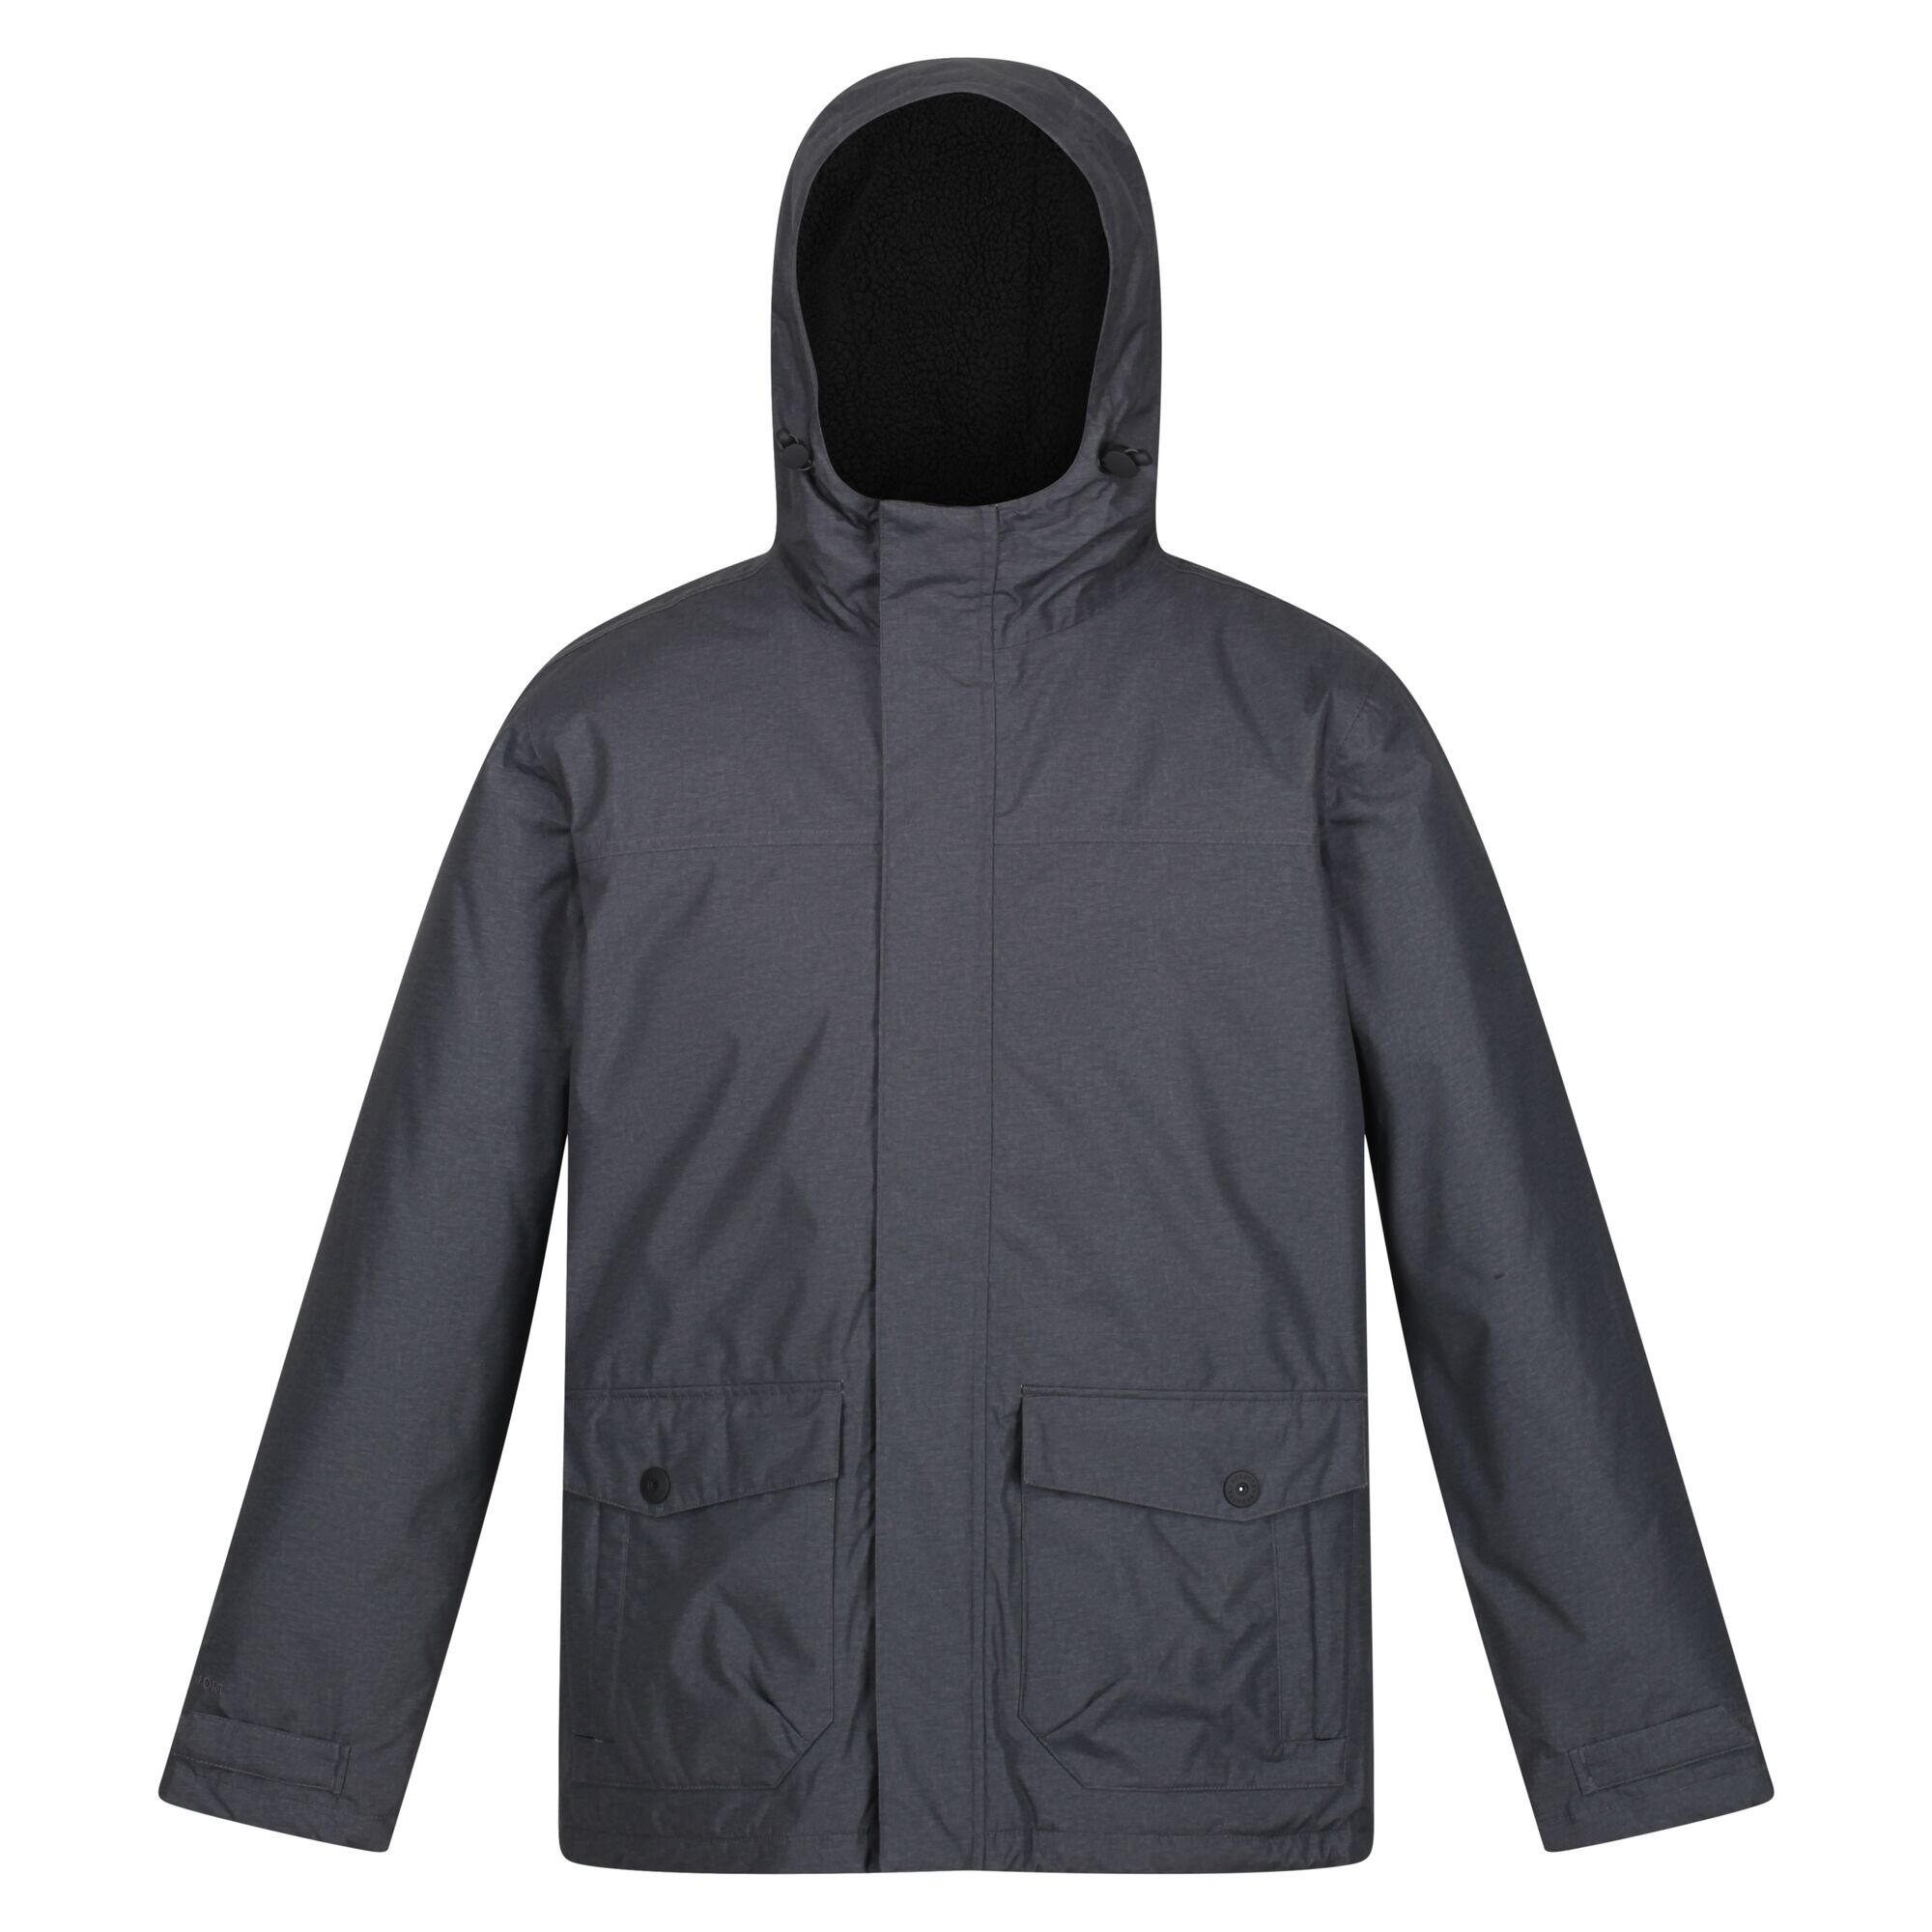 Mens Sterlings III Insulated Waterproof Jacket (Dark Grey Marl) 1/4